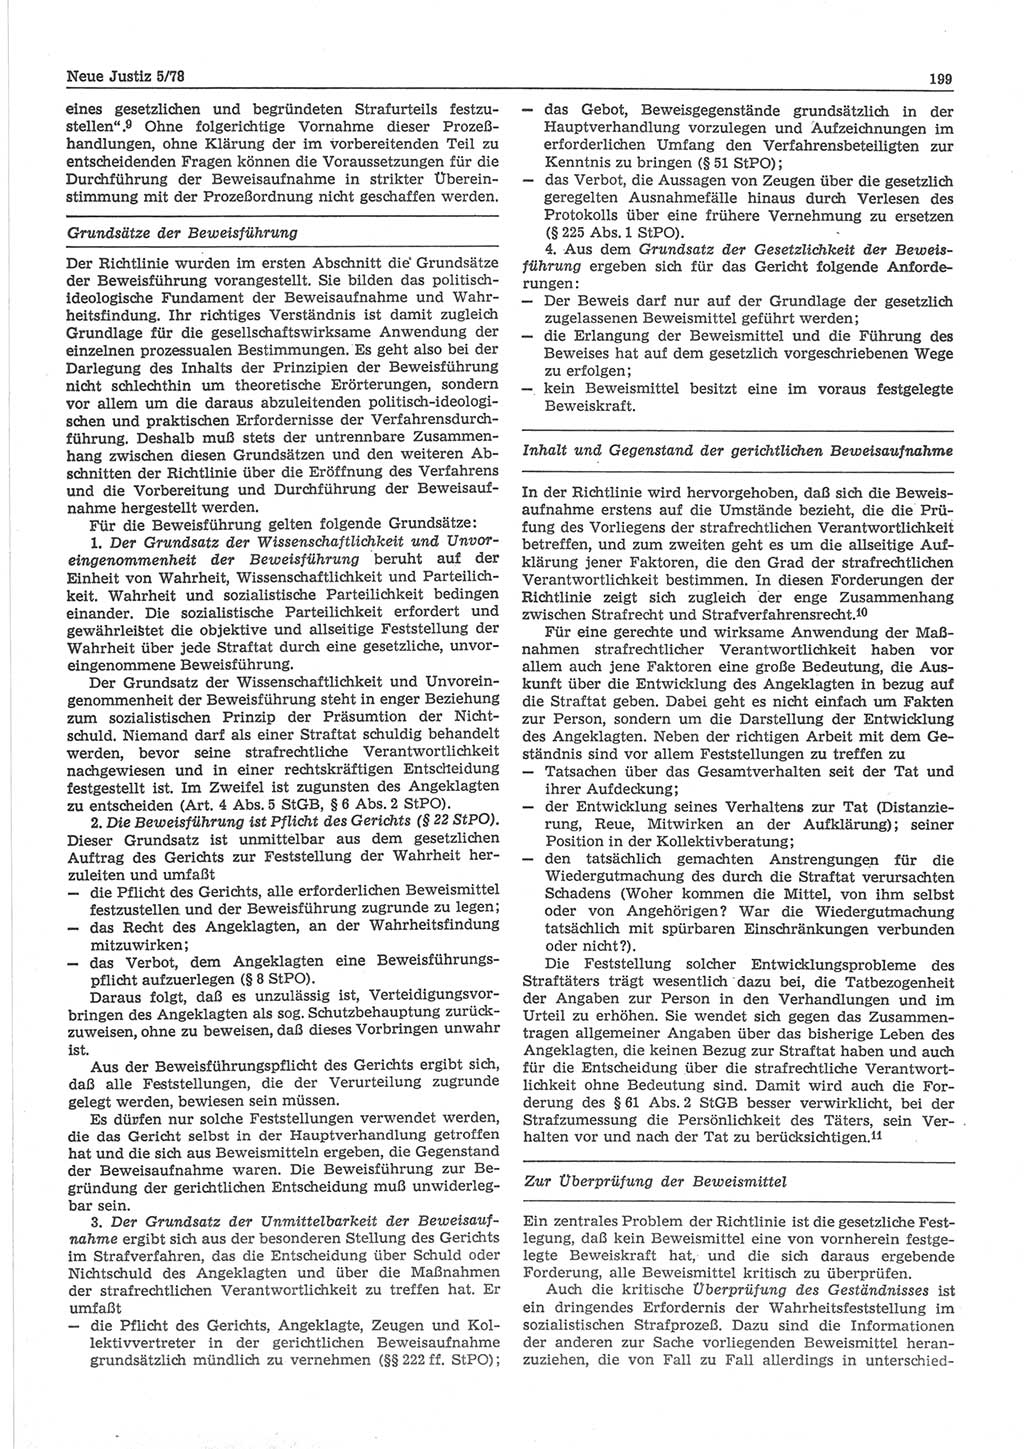 Neue Justiz (NJ), Zeitschrift für sozialistisches Recht und Gesetzlichkeit [Deutsche Demokratische Republik (DDR)], 32. Jahrgang 1978, Seite 199 (NJ DDR 1978, S. 199)